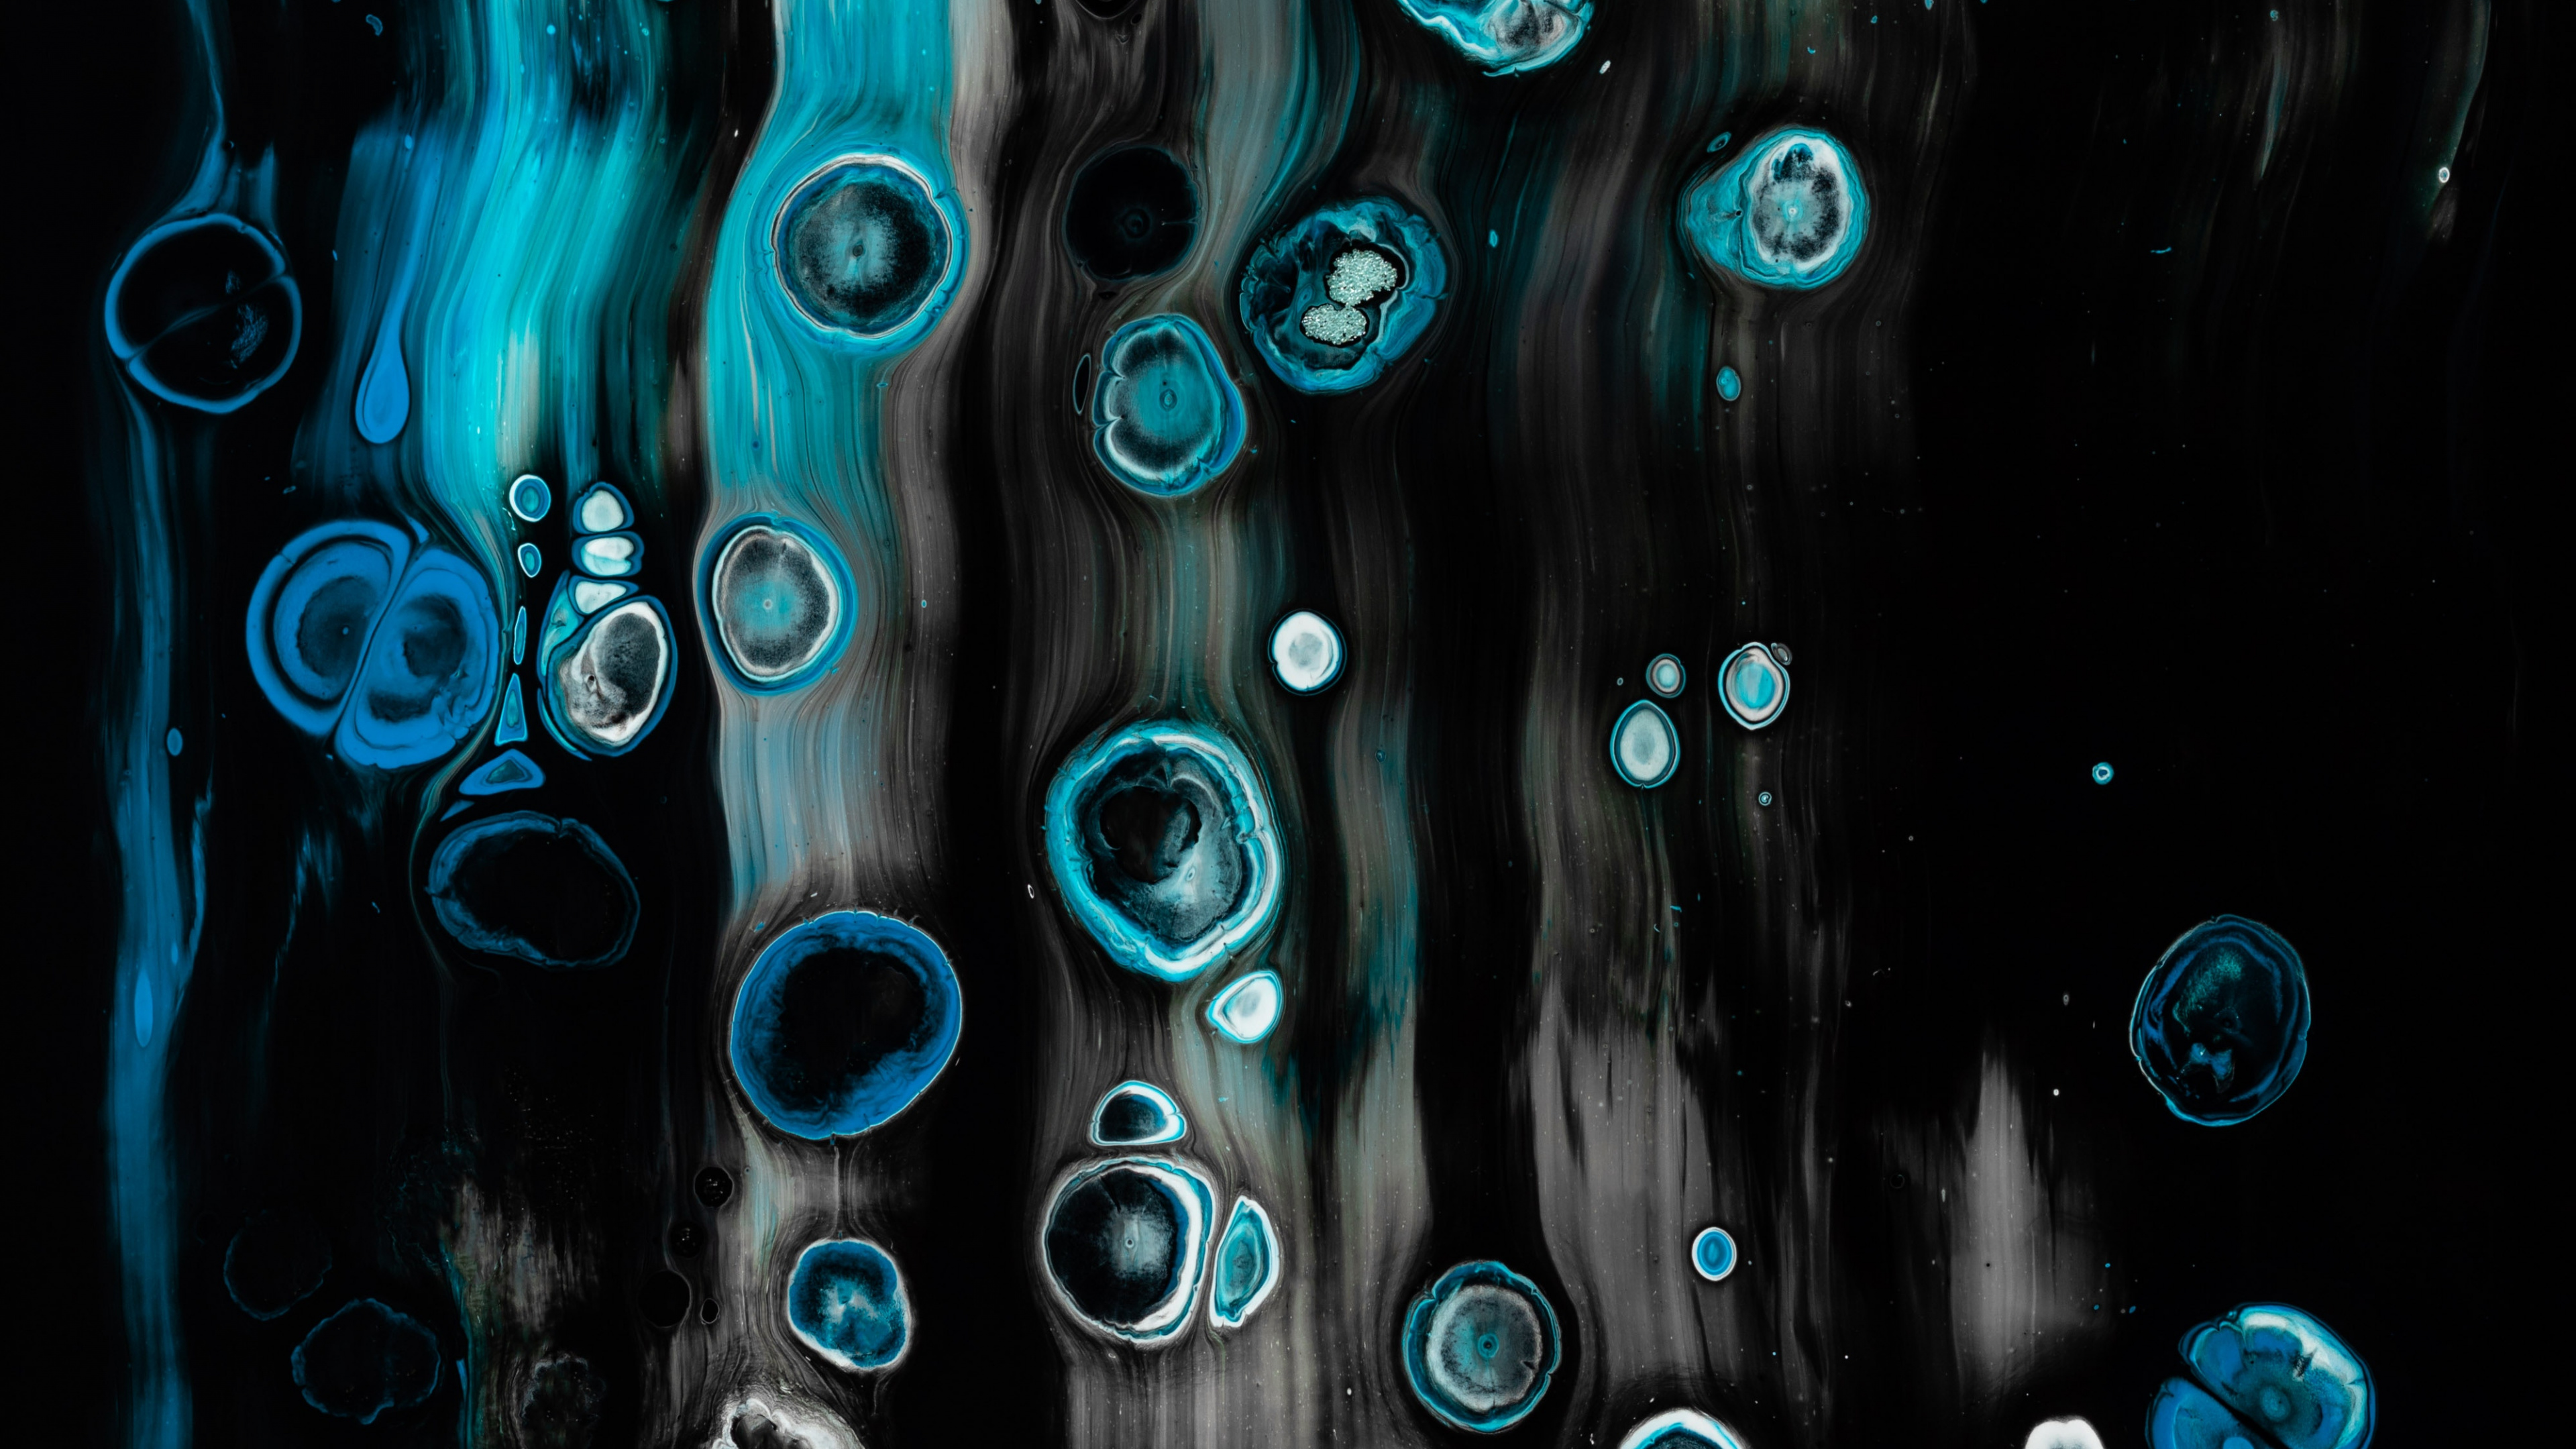 Papel Tapiz Digital de Luz Azul y Blanca. Wallpaper in 3840x2160 Resolution